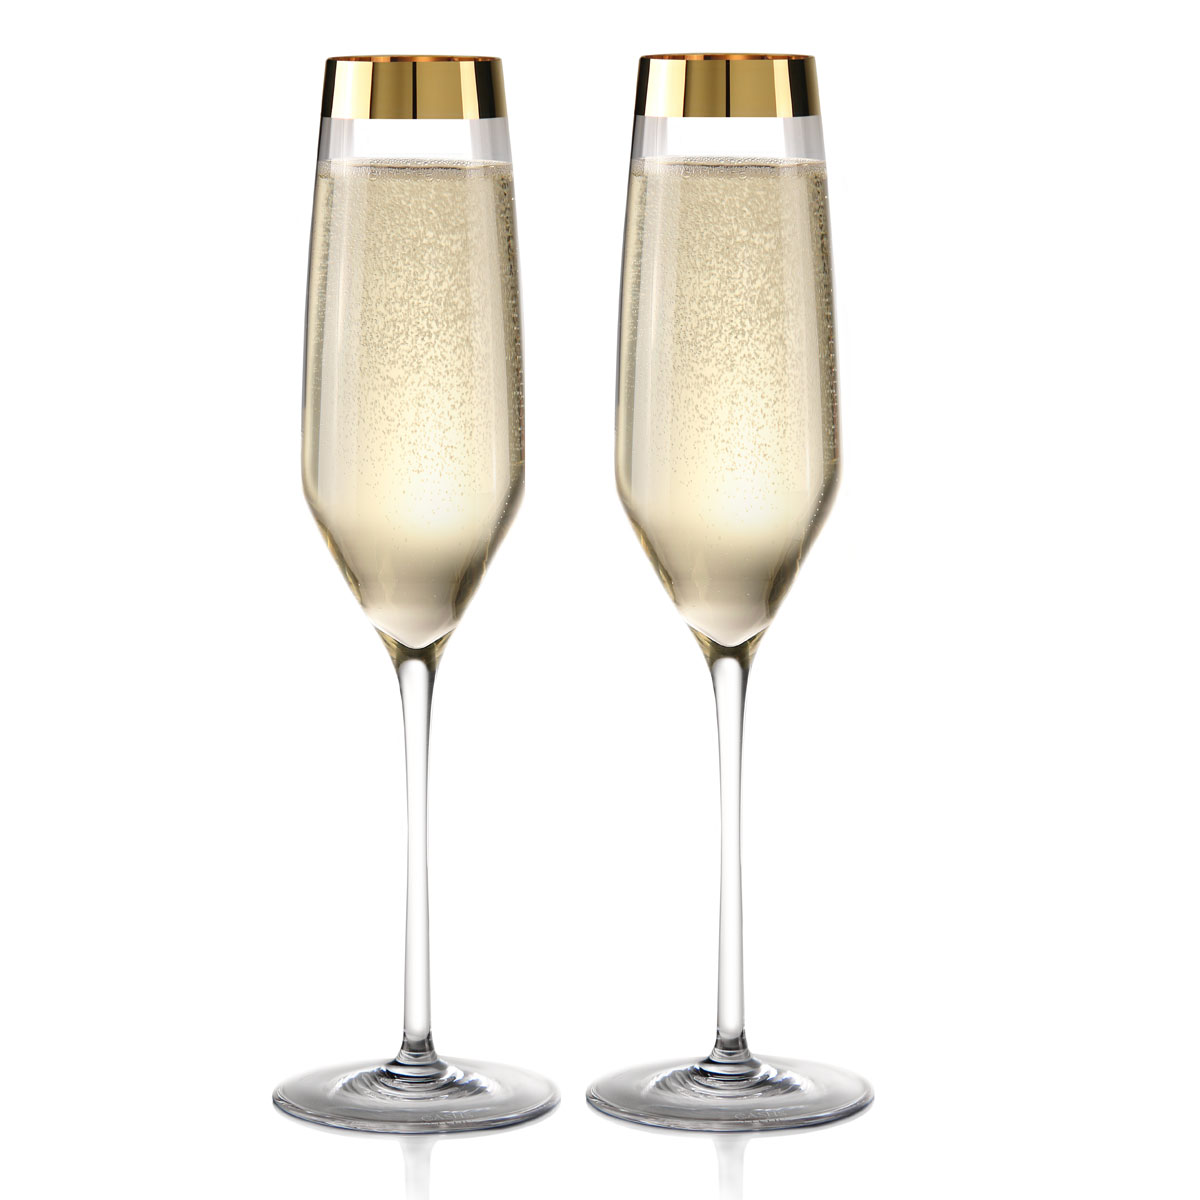 Cashs Ireland Vino Grand Cru Gold Champagne Flute Glasses, Pair